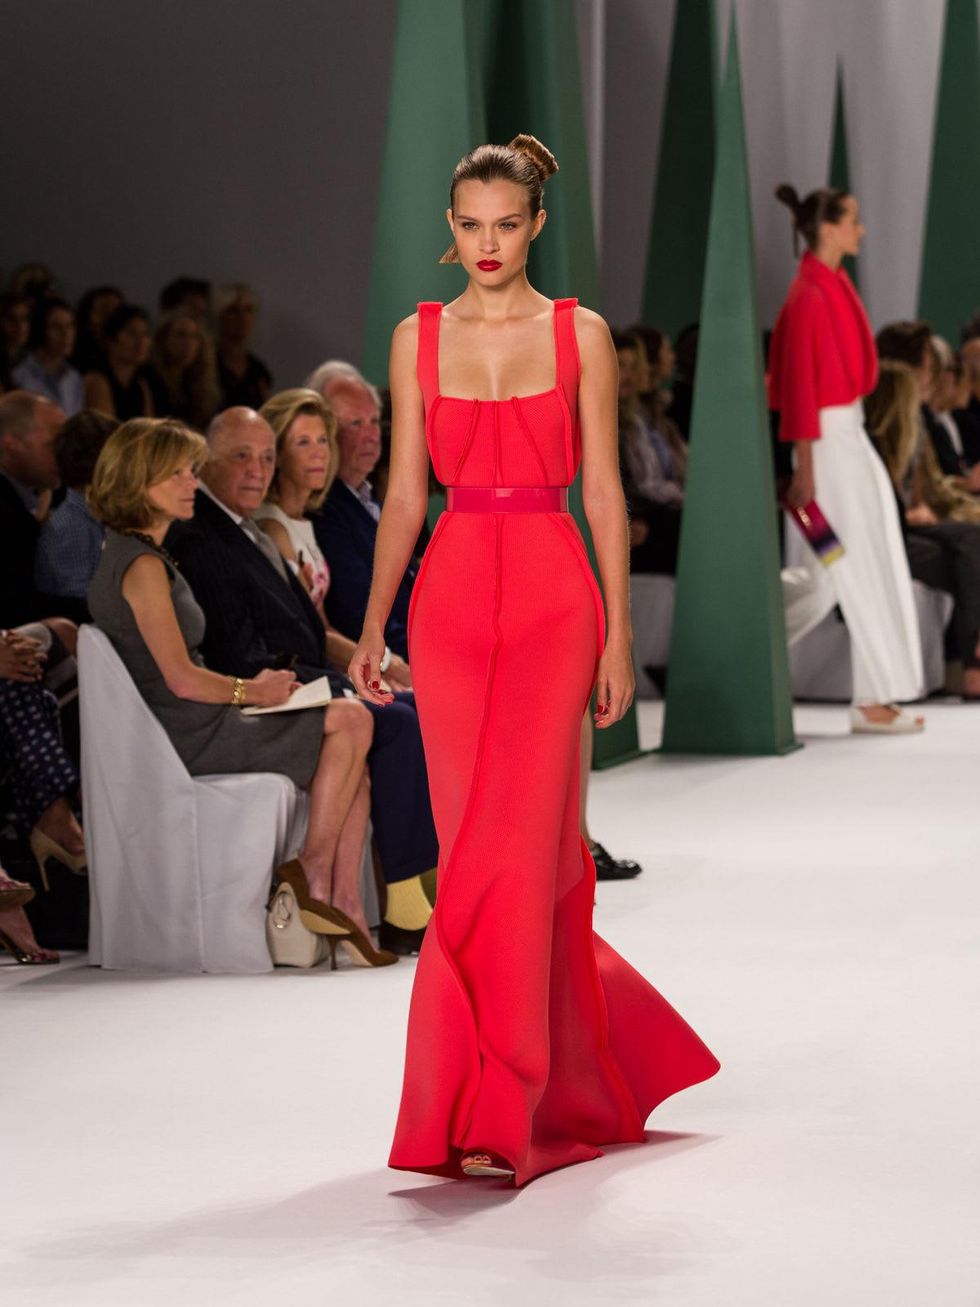 Fashion Week spring 2015 Carolina Herrera red gown